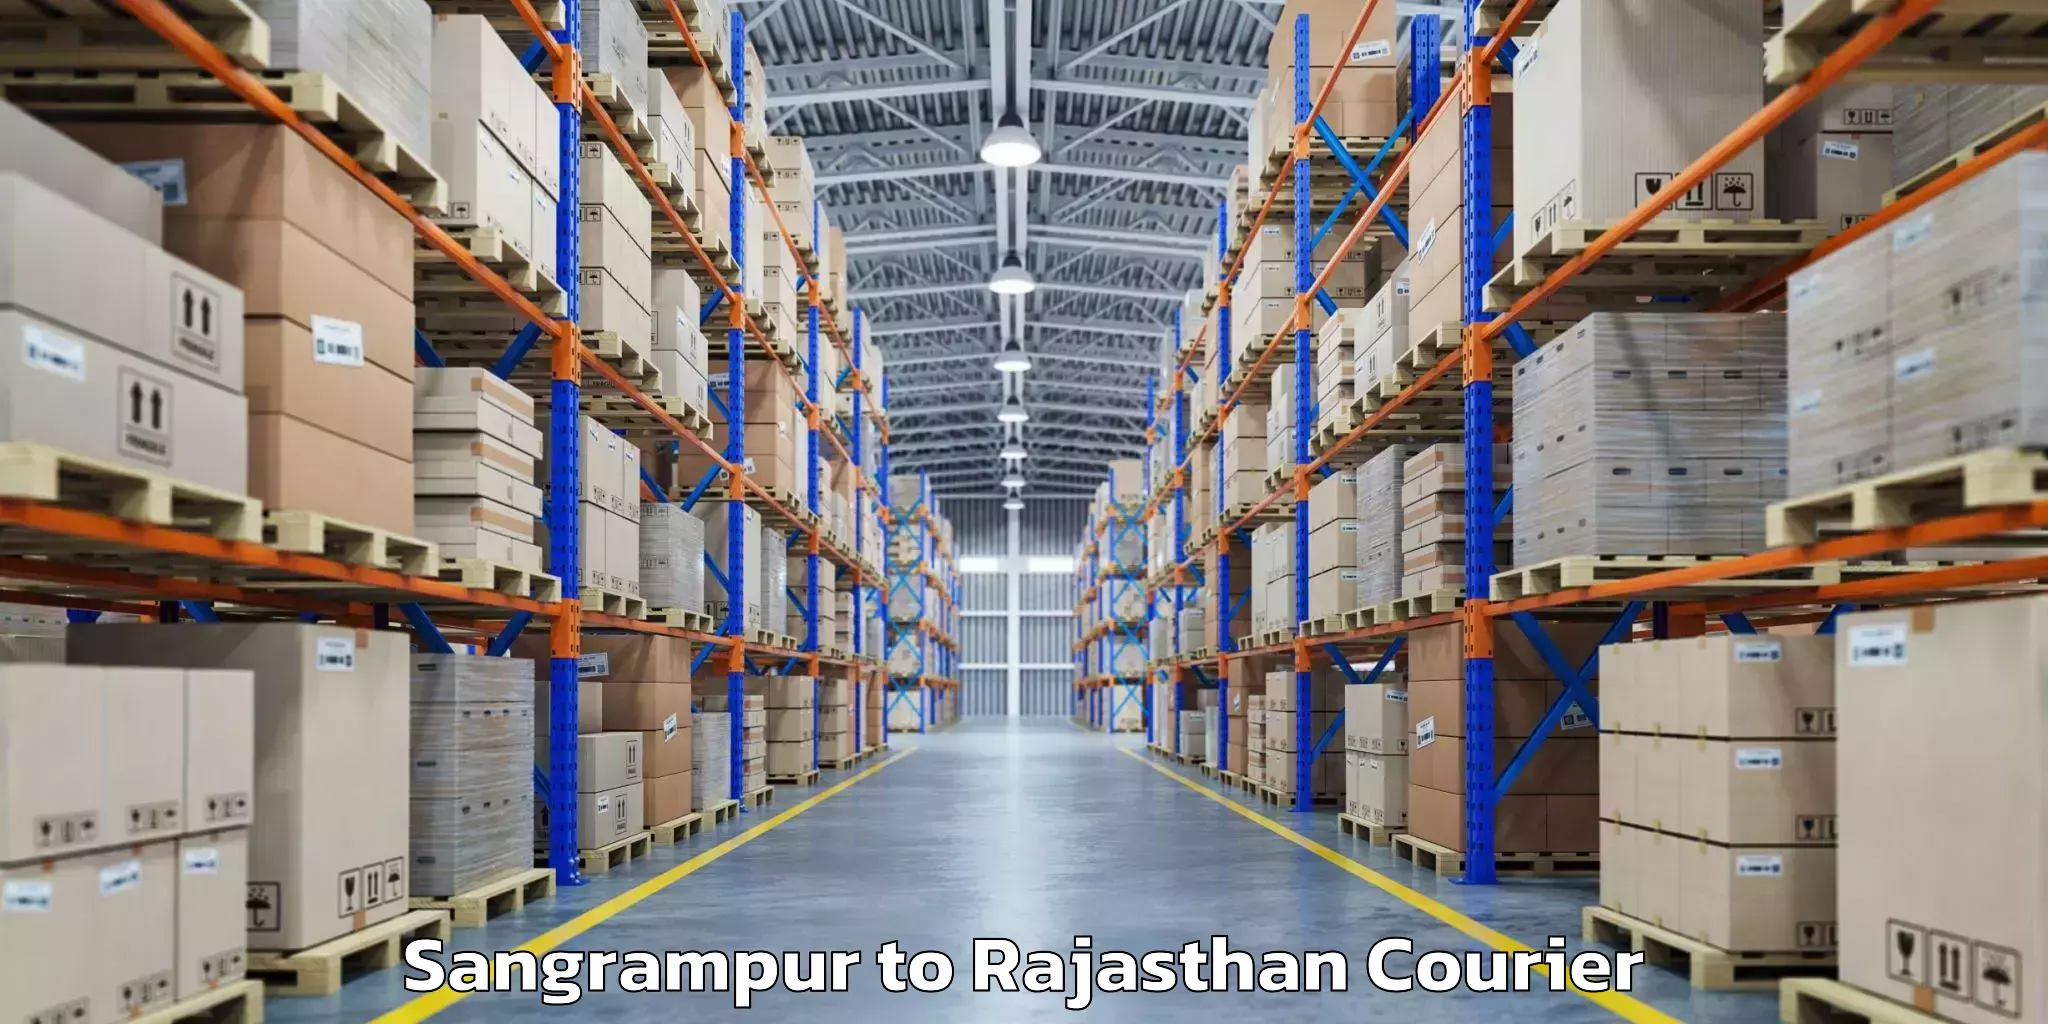 Baggage shipping logistics Sangrampur to Kishangarh